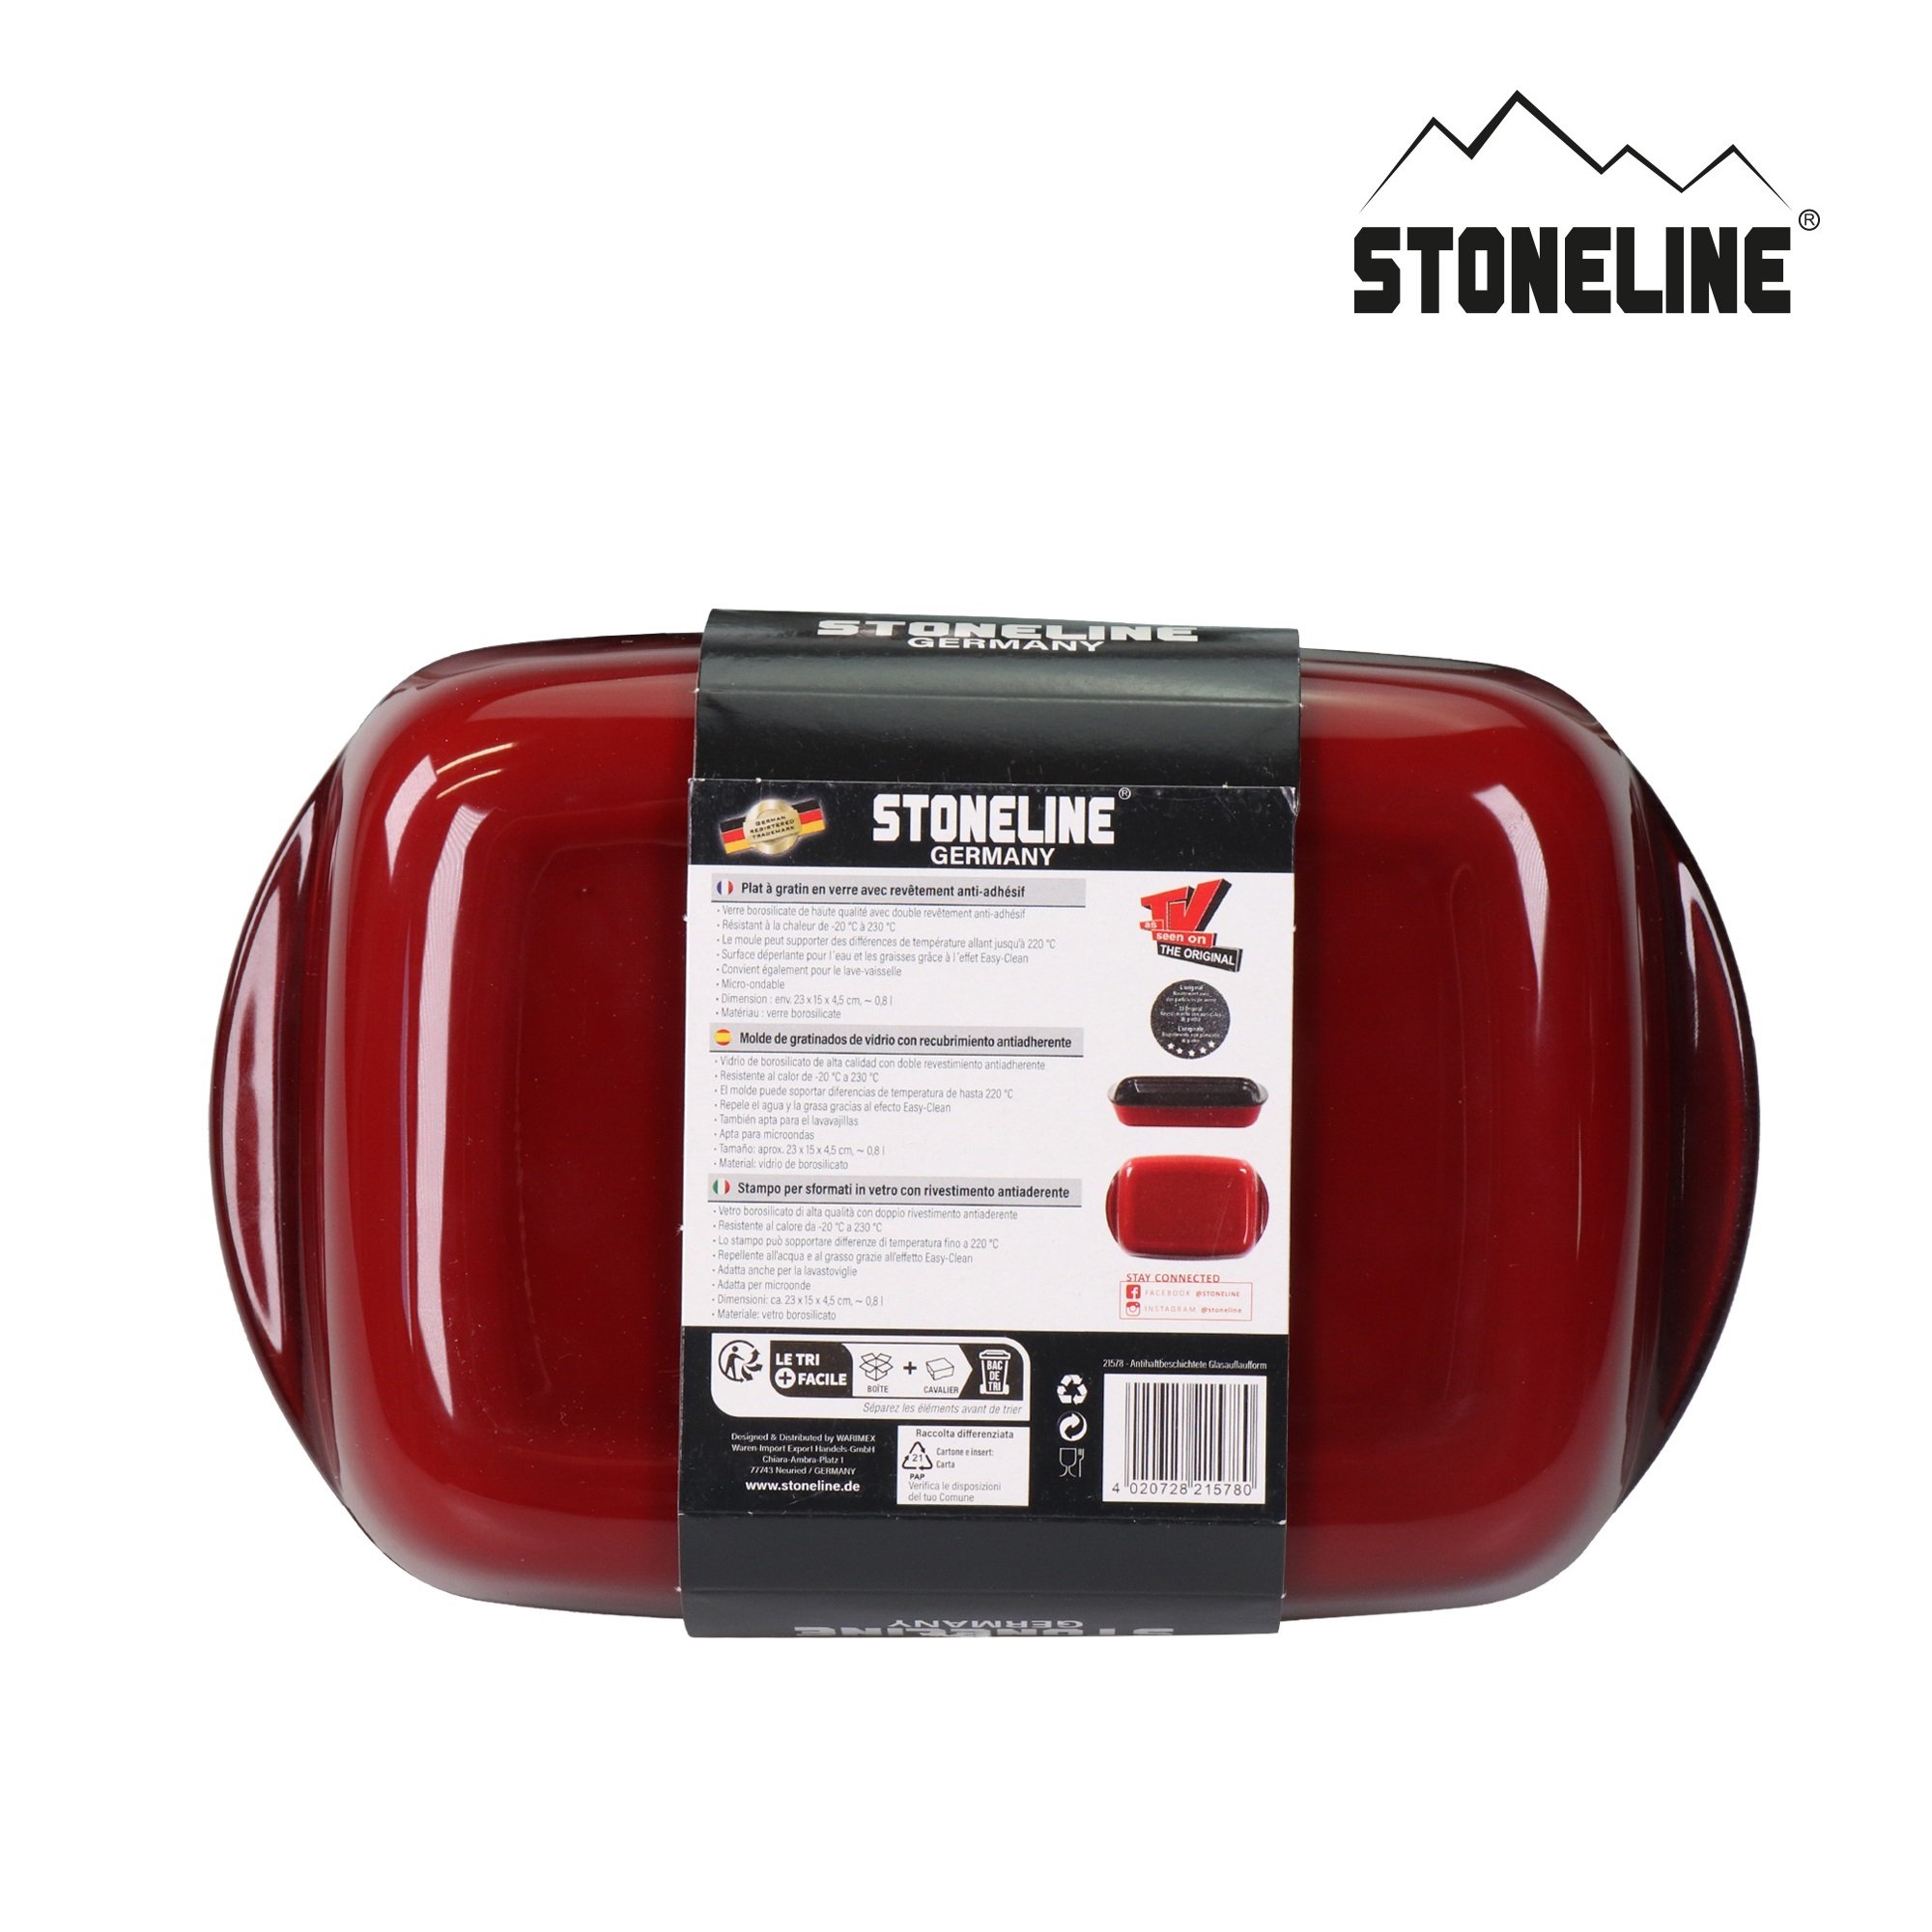 STONELINE® Pirofila Teglia Rettangolare 23x15 cm | Antiaderente Vetro Borosilicato